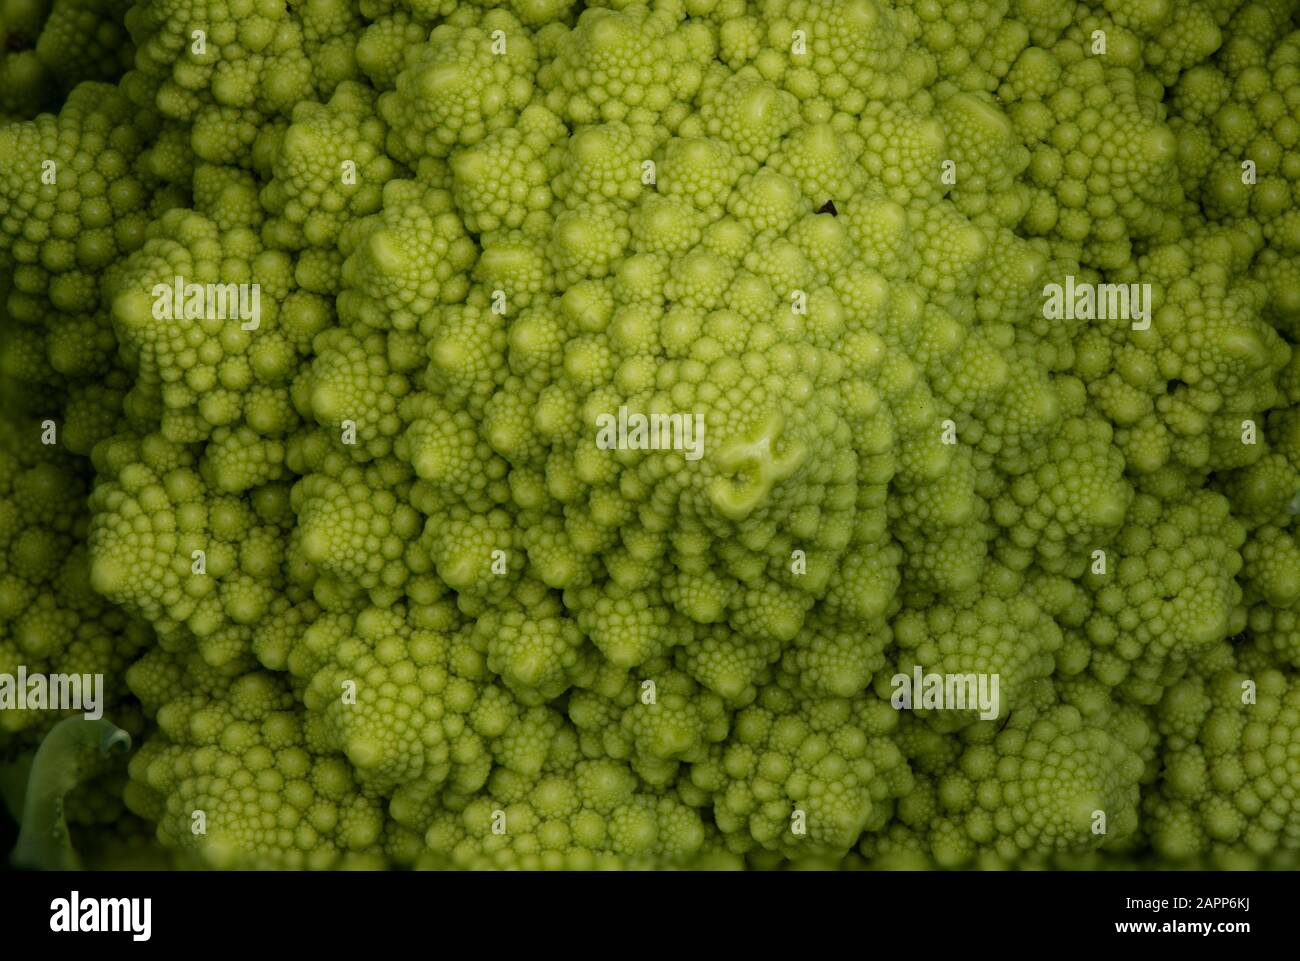 Fibonacci spiral visible in Romanesco broccoli, macro. Stock Photo